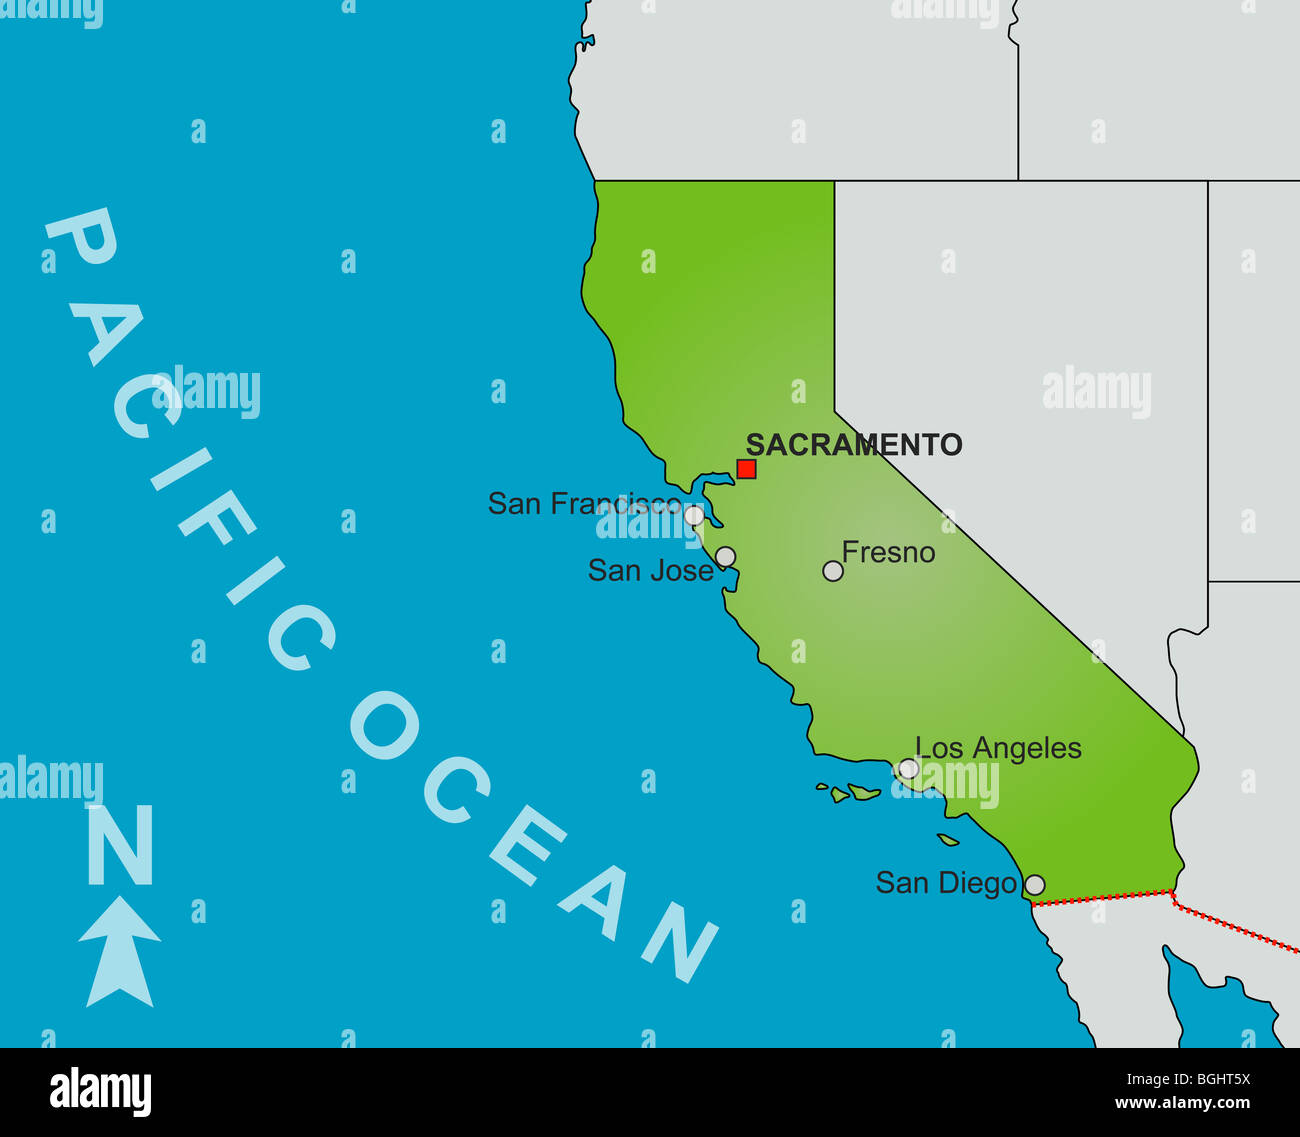 Una estilizada mapa del estado de California que muestran diferentes grandes ciudades y estados cercanos. Foto de stock